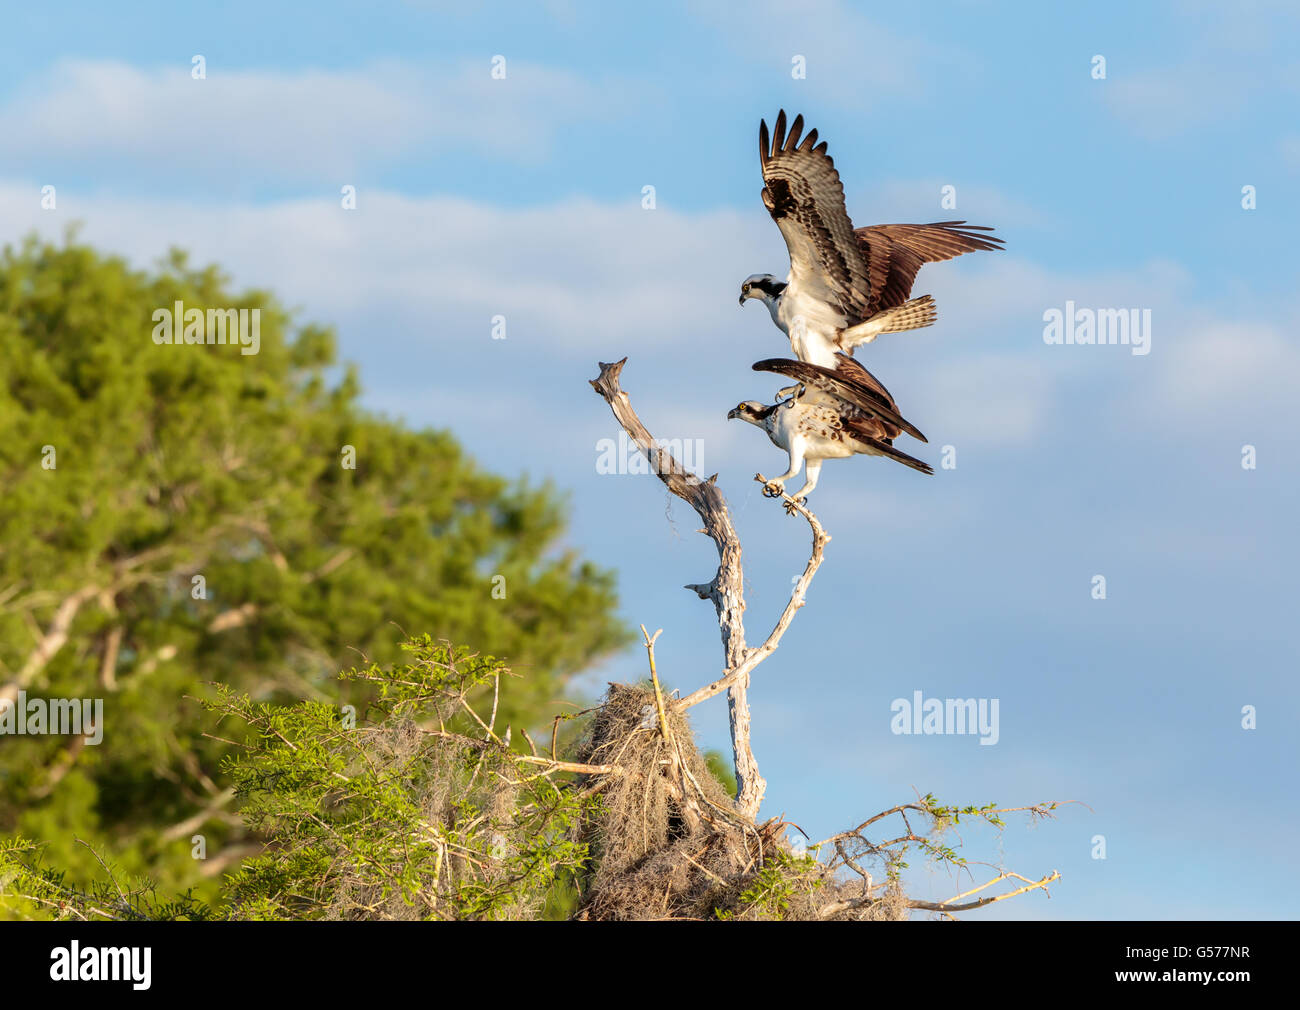 Paar von Osprey, einer auf eine andere, Flügel ausgebreitet, auf Ast, um zu Paaren, blauer Himmel, weiße Wolken, grünes Laub Stockfoto